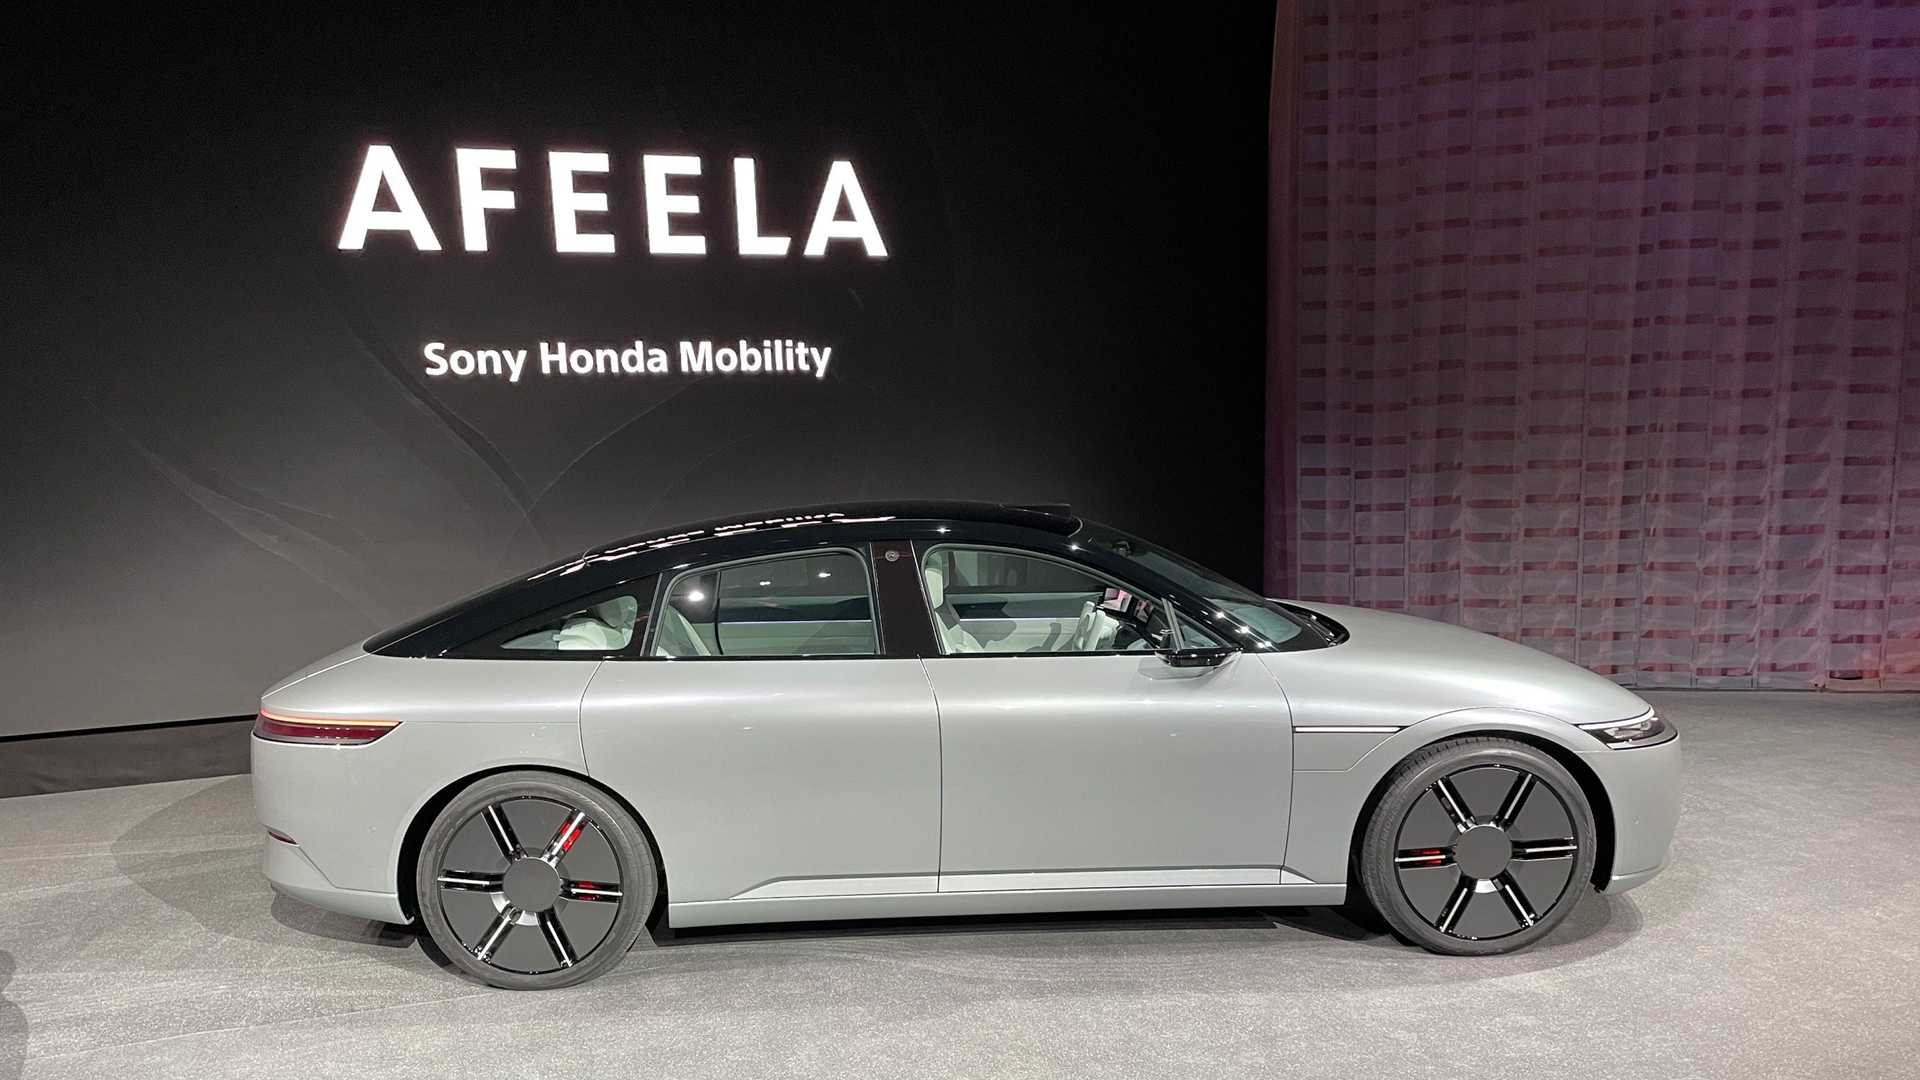 سوني تطلق علامتها التجارية الجديدة للسيارات رسمياً بالتعاون مع هوندا 25